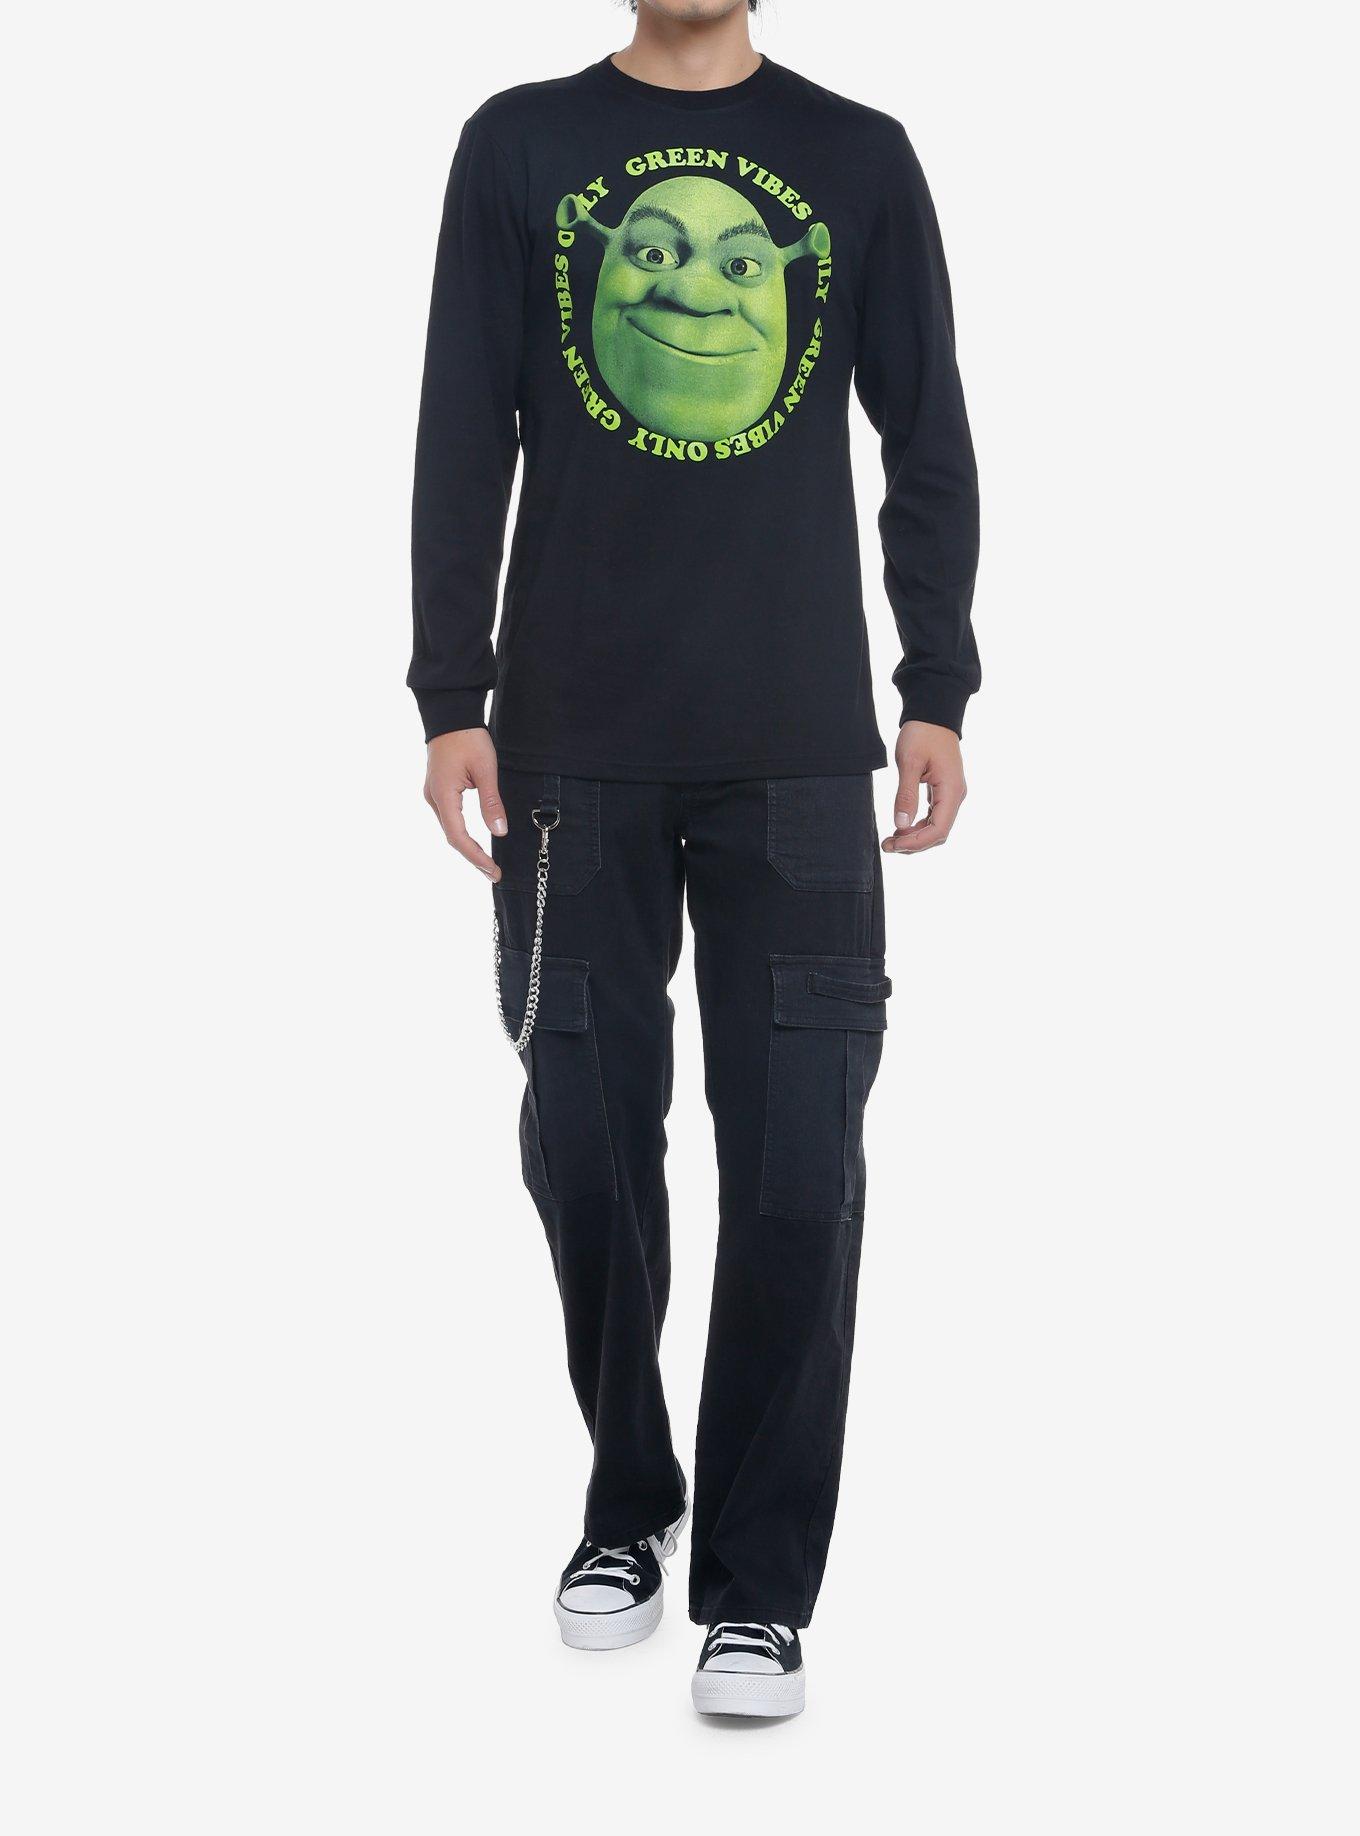 Shrek Green Vibes Only Long-Sleeve T-Shirt, BLACK, alternate